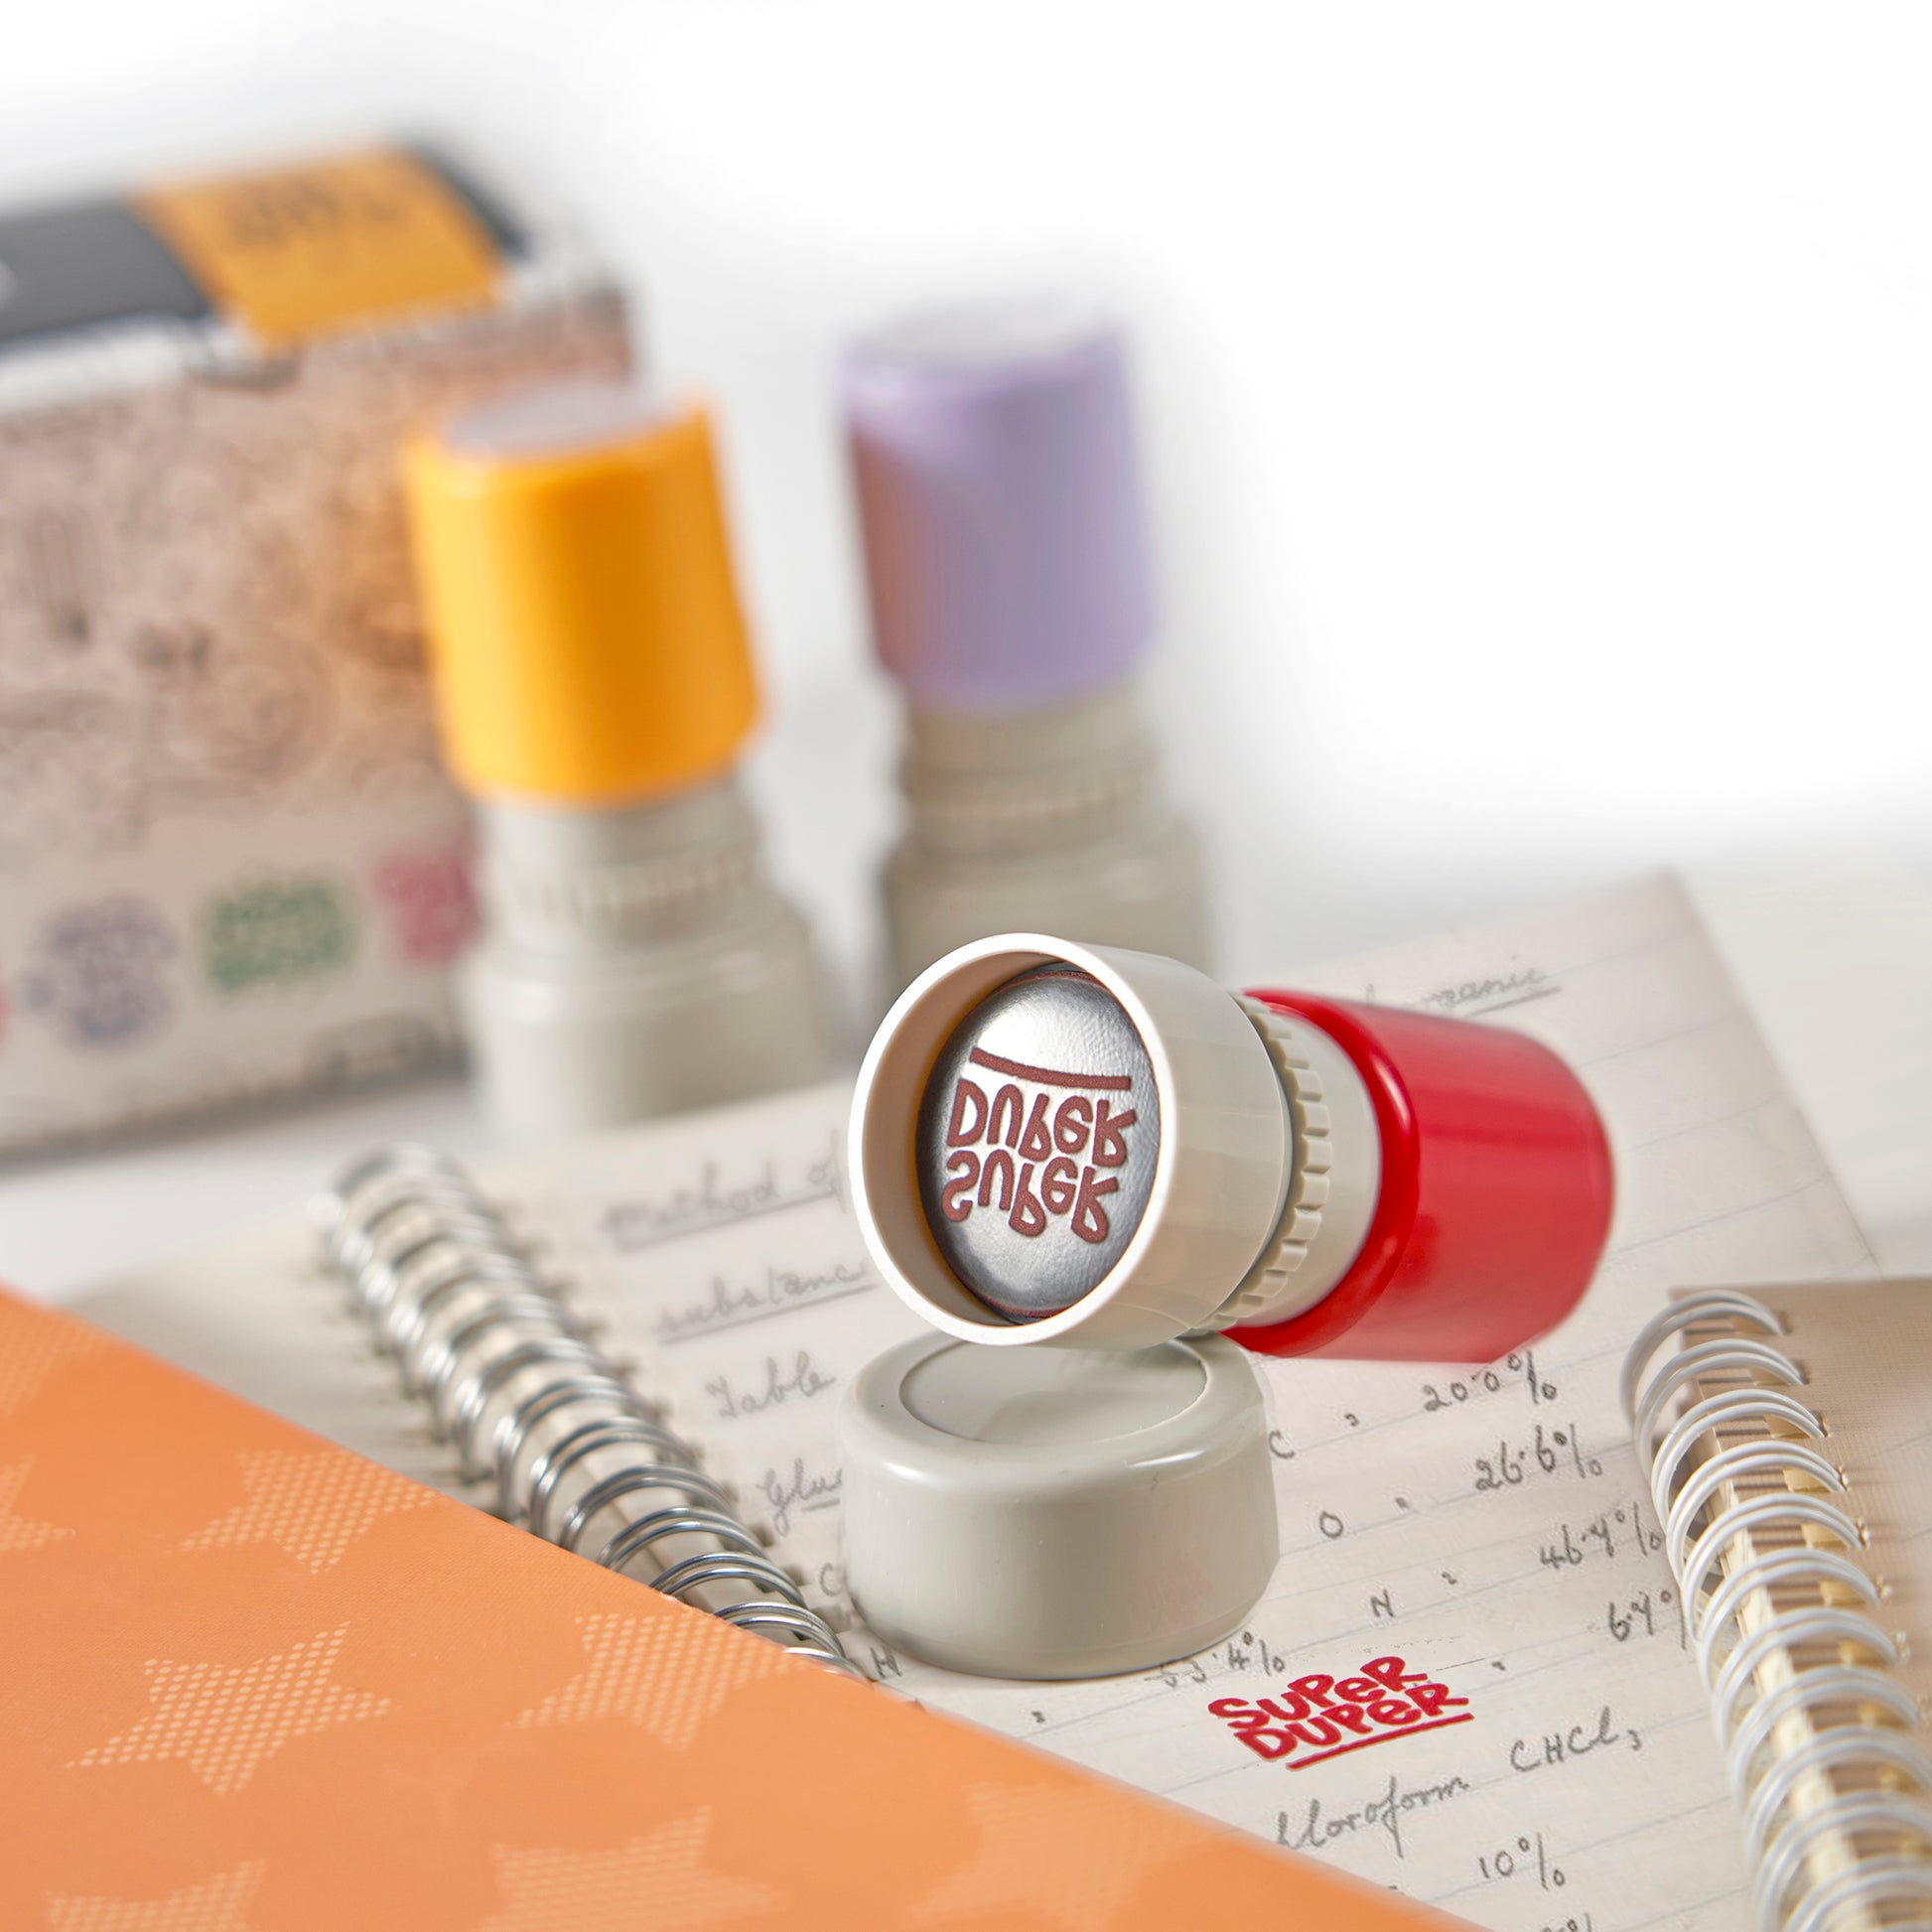 Stamp Joy - 6 Self-Ink Flash Stamp Set Teacher Stamps, Office Stationery Stamps, Pre-Inked (Motivation Set)